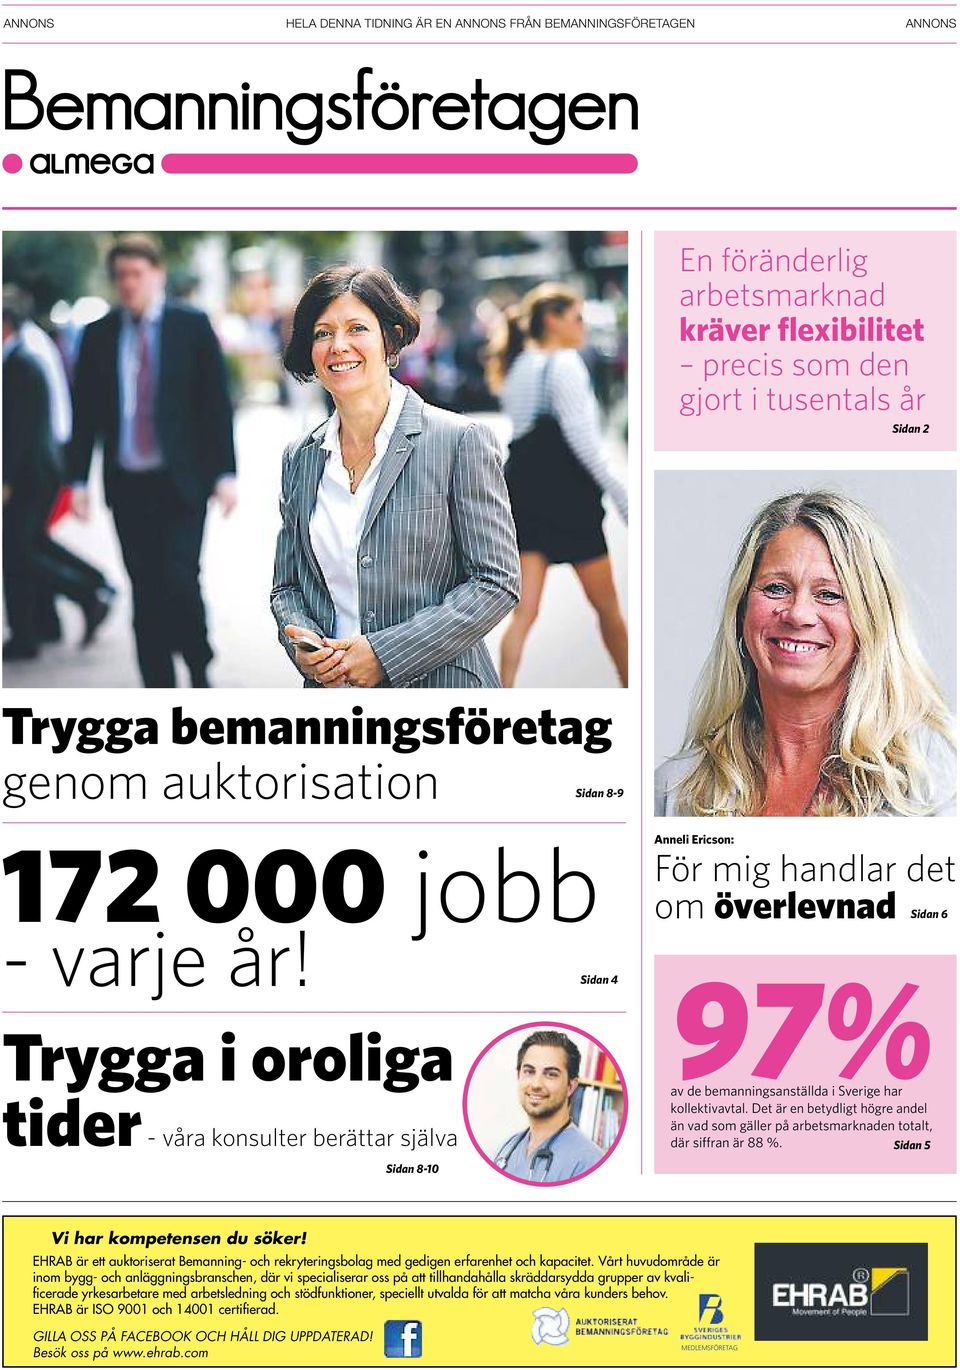 Sidan 4 Trygga i oroliga tider - våra konsulter berättar själva Anneli Ericson: För mig handlar det om överlevnad Sidan 6 97% av de bemanningsanställda i Sverige har kollektivavtal.